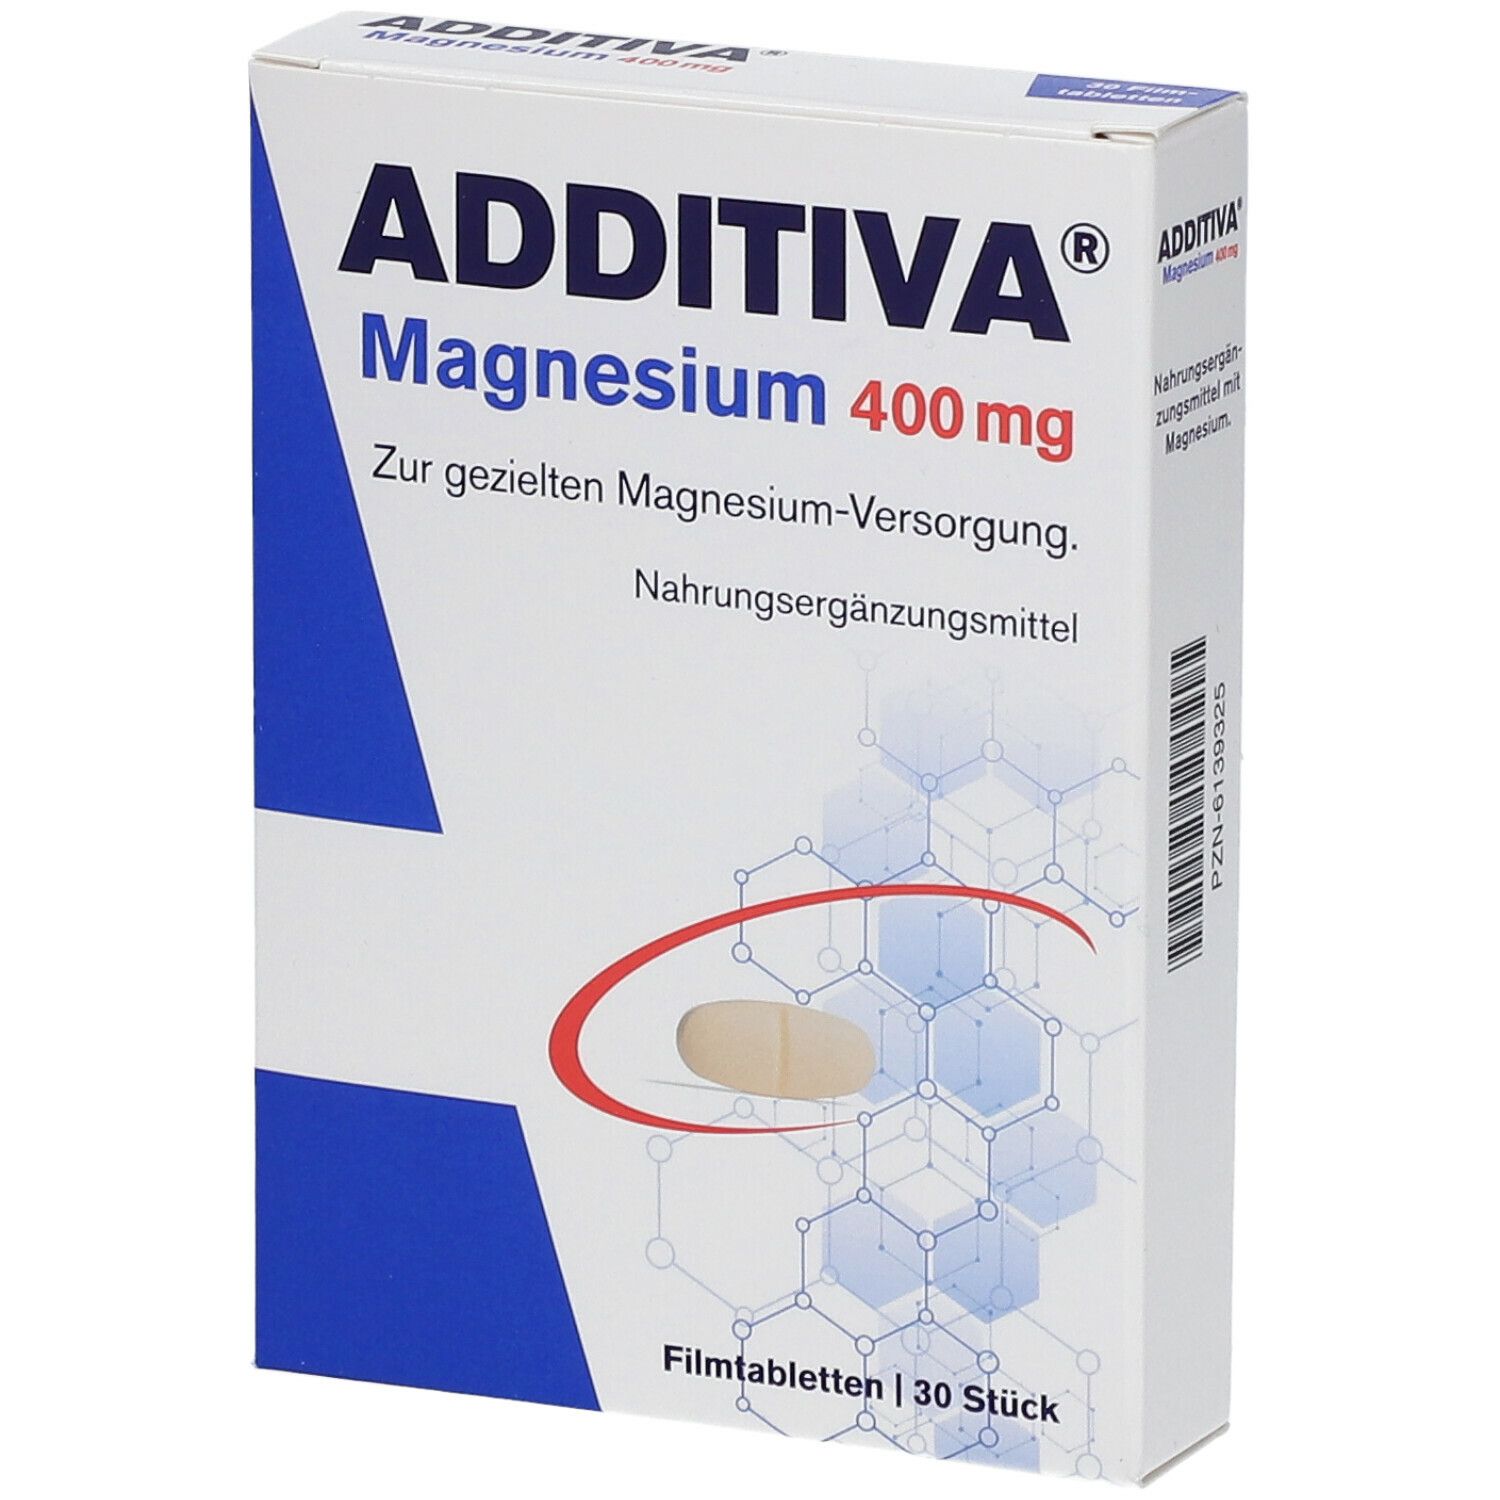 Additiva® Magnesium 400 mg